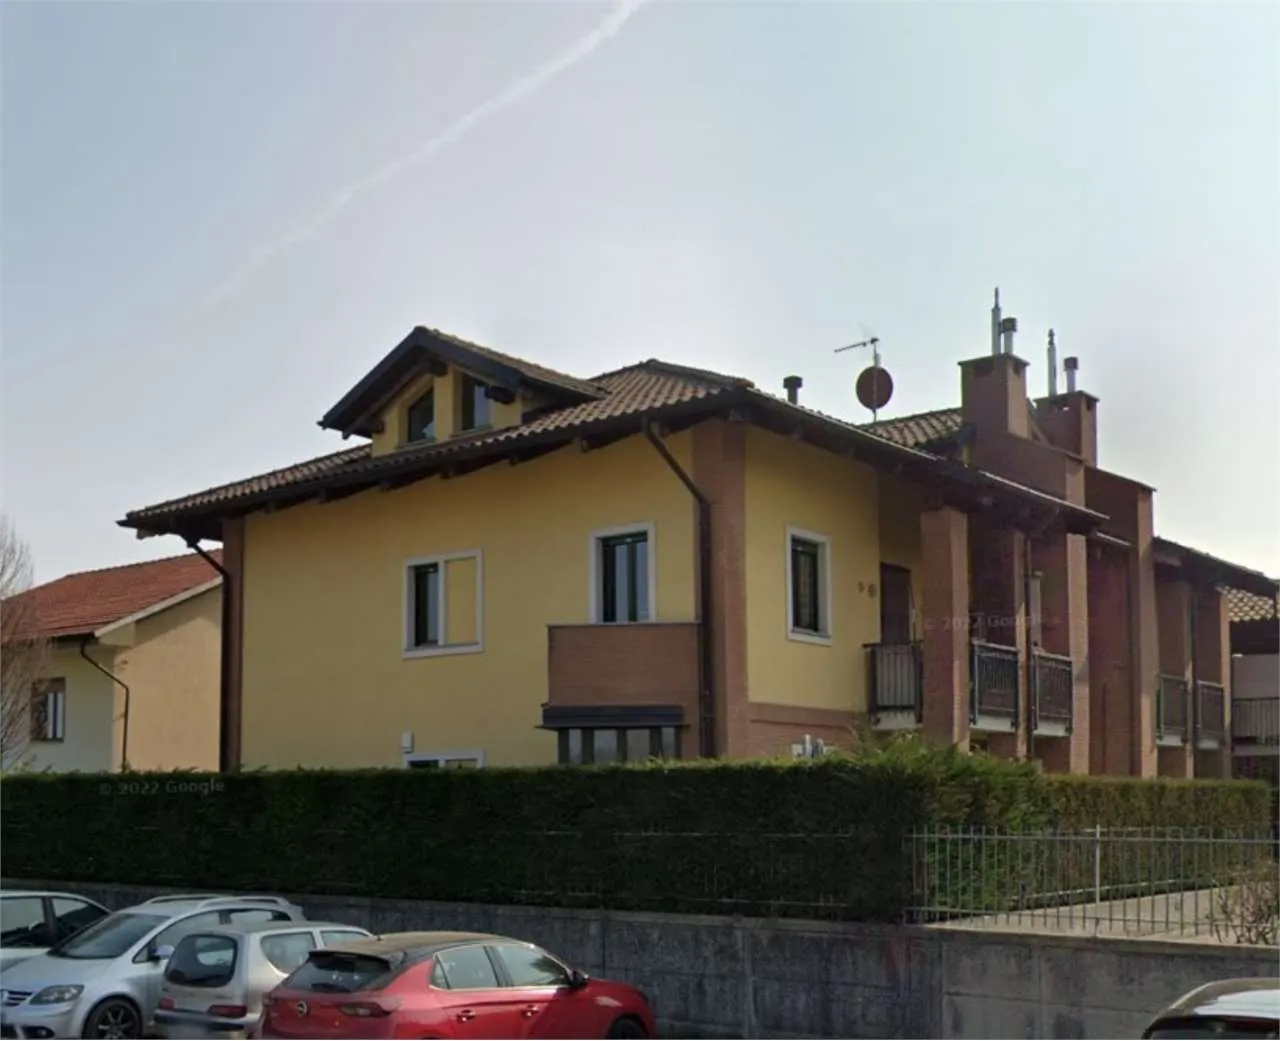 Immagine per Appartamento in Asta a Givoletto via Torino 72